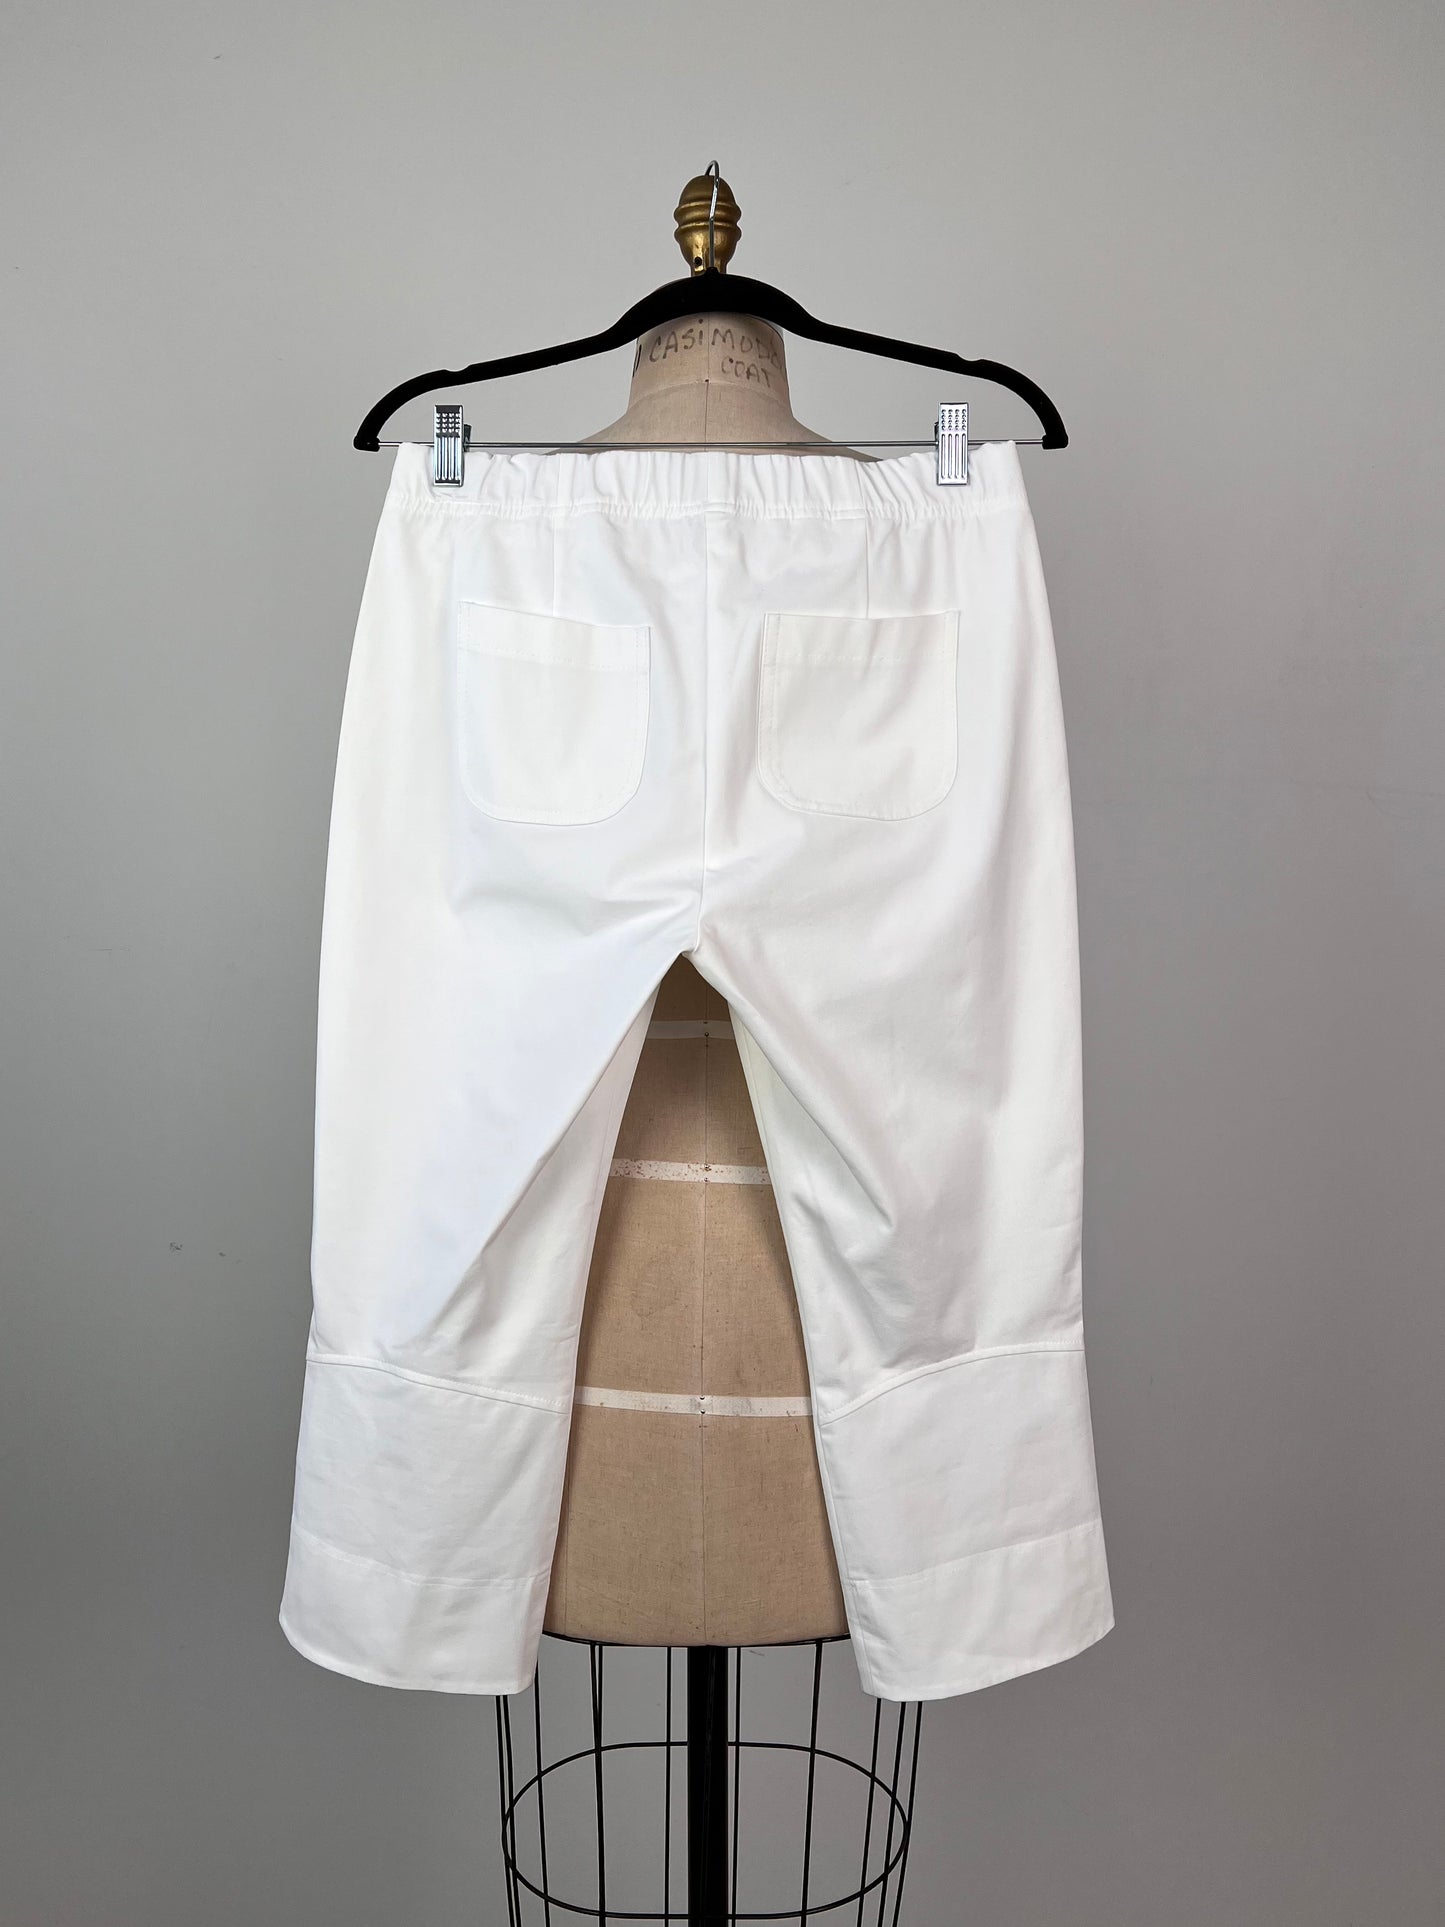 Pantalon corsaire extensible blanc (10)